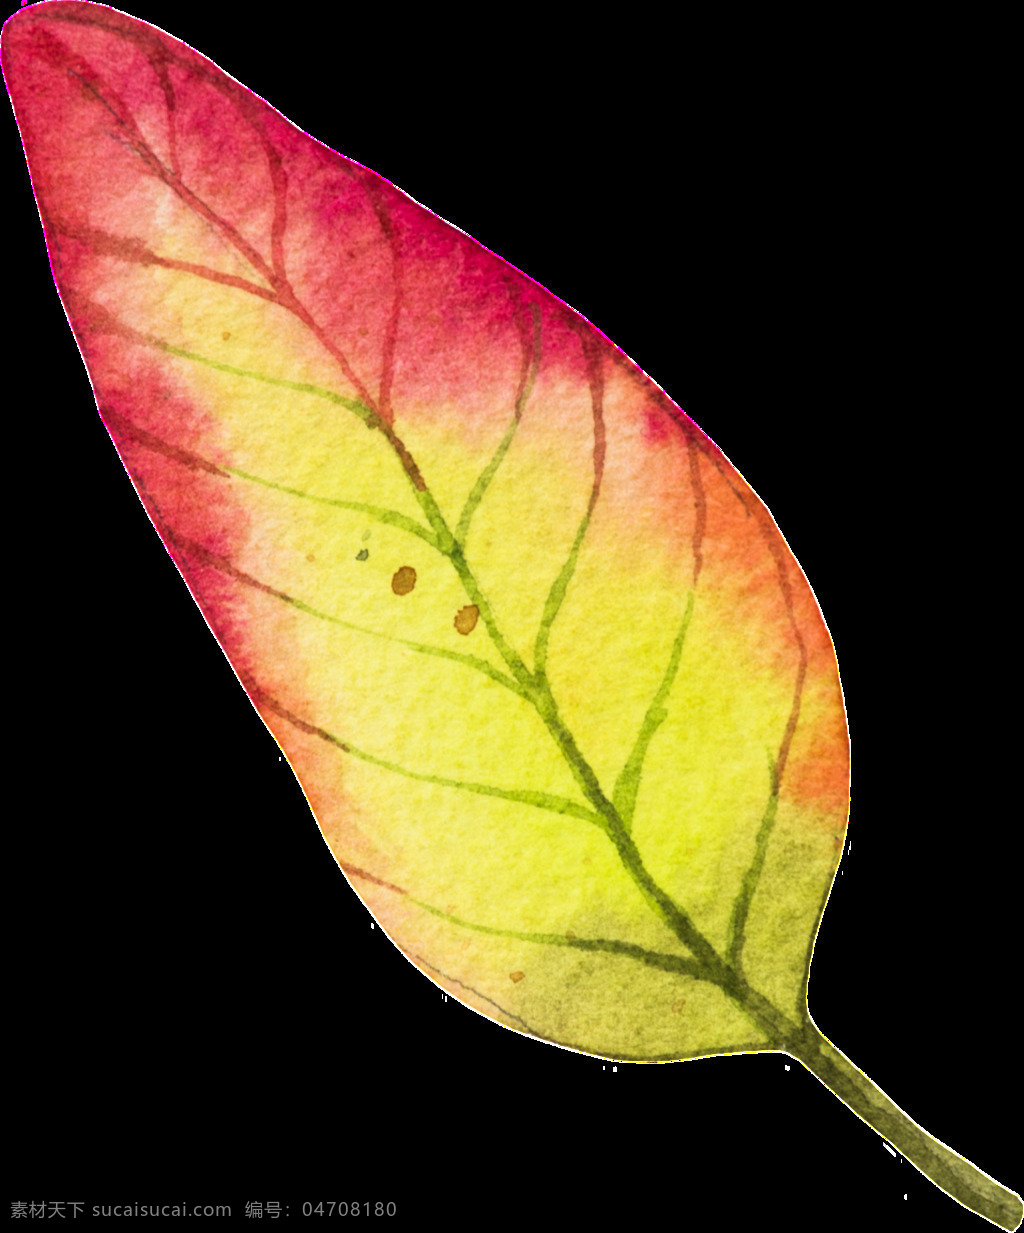 片 秋季 树叶 矢量 红色 黄色 平面素材 设计素材 矢量素材 叶子 植物